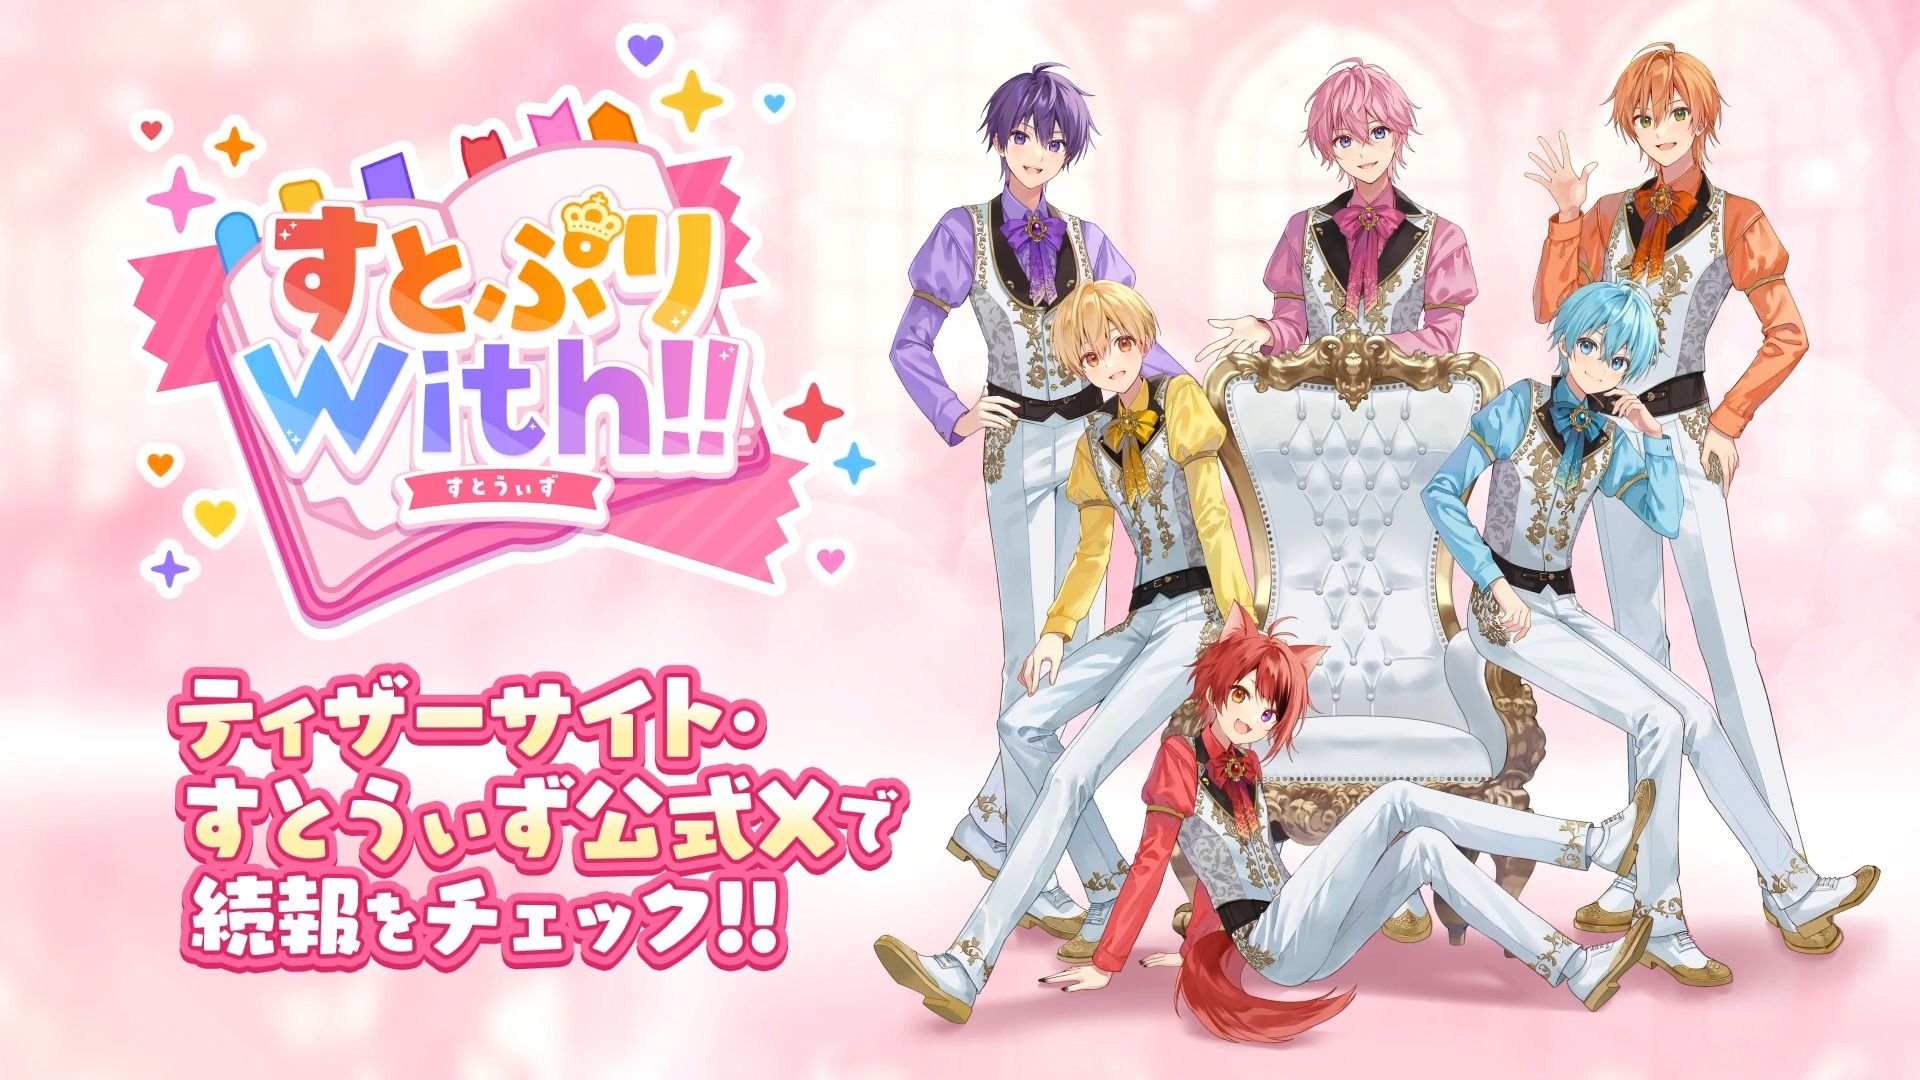 人气团体「草莓王子」首款手游《草莓王子With!!》将于3月17日推出！